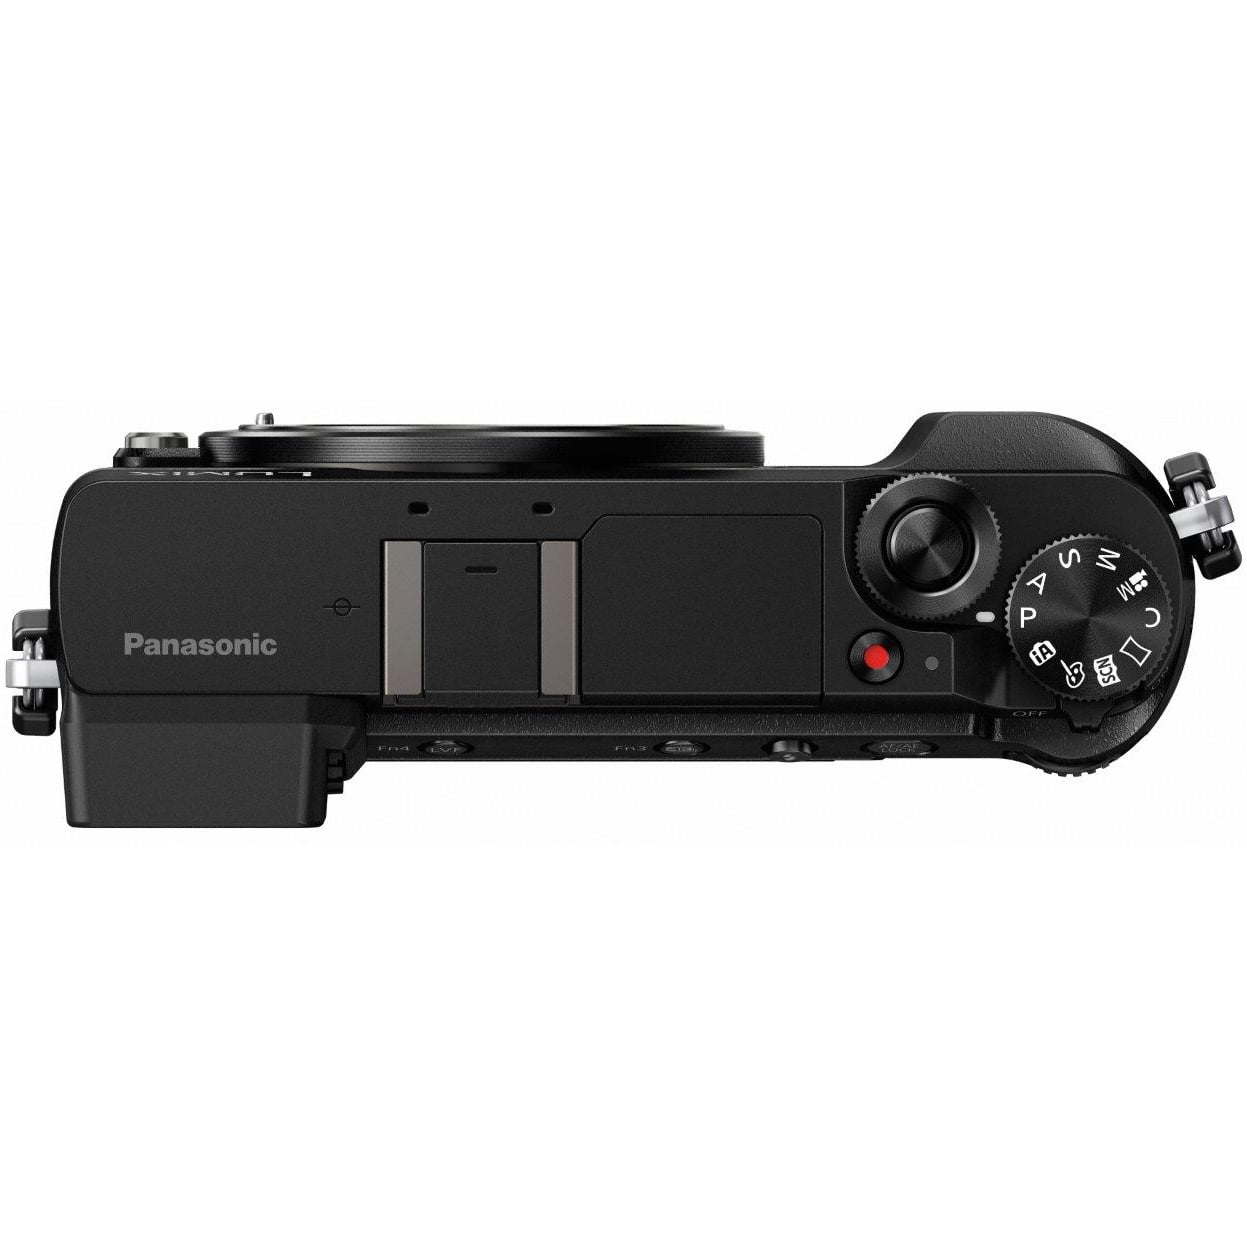 Panasonic LUMIX GX85 4K Mirrorless Camera with 12-32mm & 45 